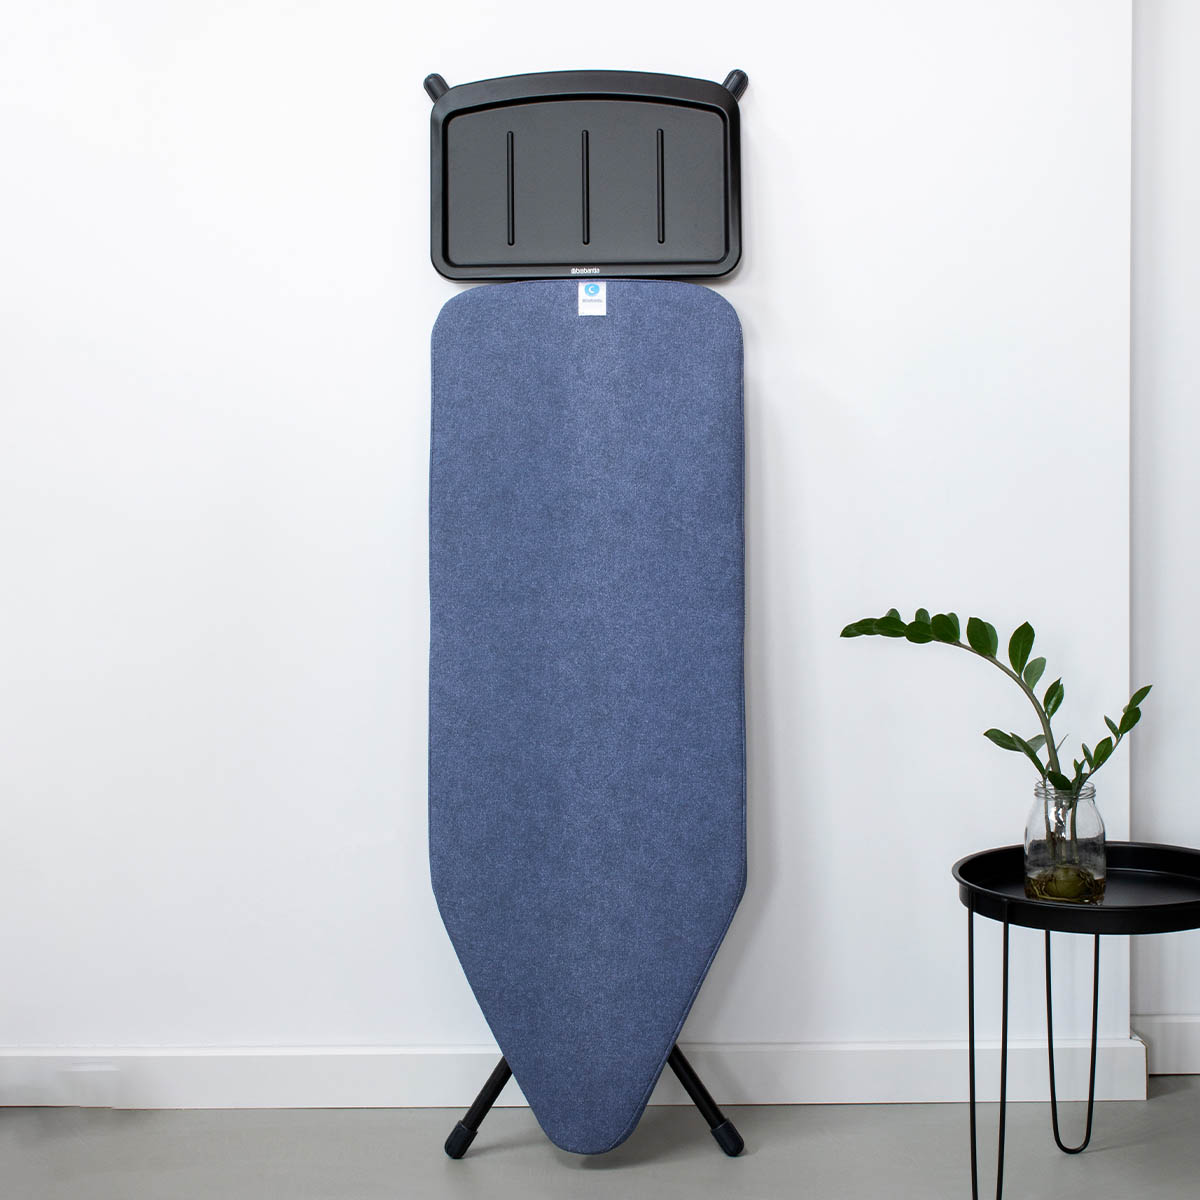 Assortiment Minky Iron Board housse 122 cm x 43 cm ajustement facile élastique coton Home